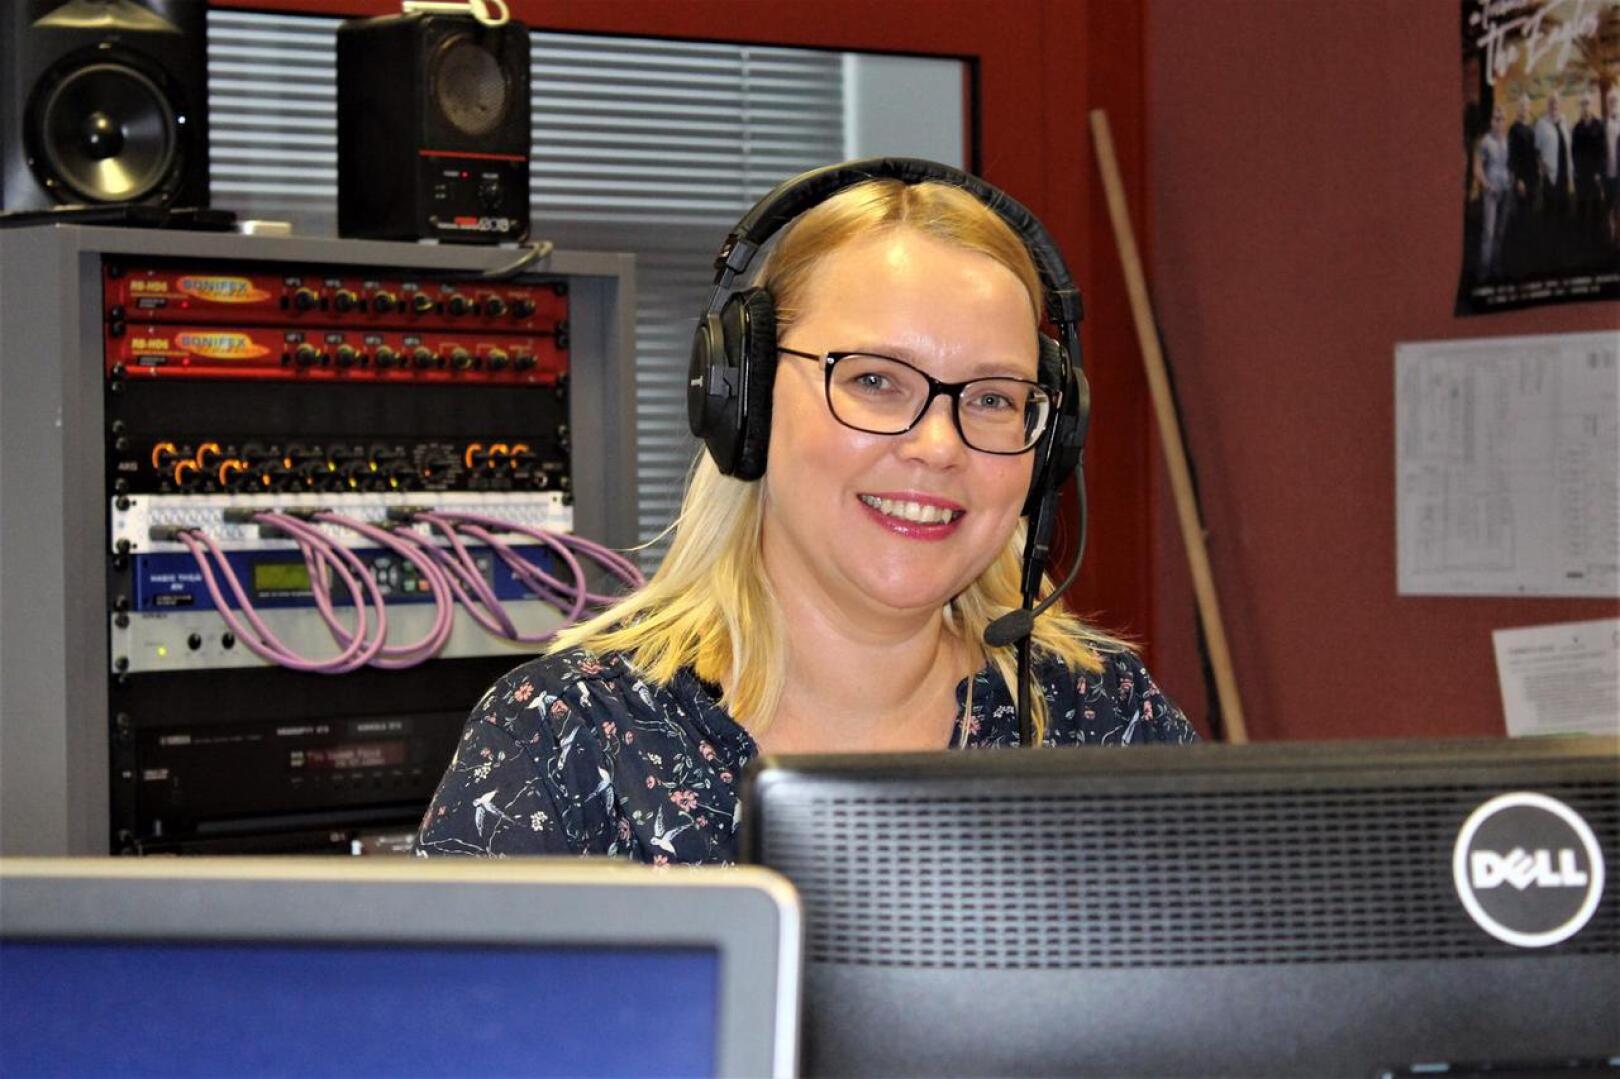 Yle Kokkolan radiojuontaja Niina Koskela sanoo, että radiojuontajan työssä vaaditaan hyvää stressinsietokykyä, vuorovaikutustaitoja sekä kykyä tehdä nopeita päätöksiä.